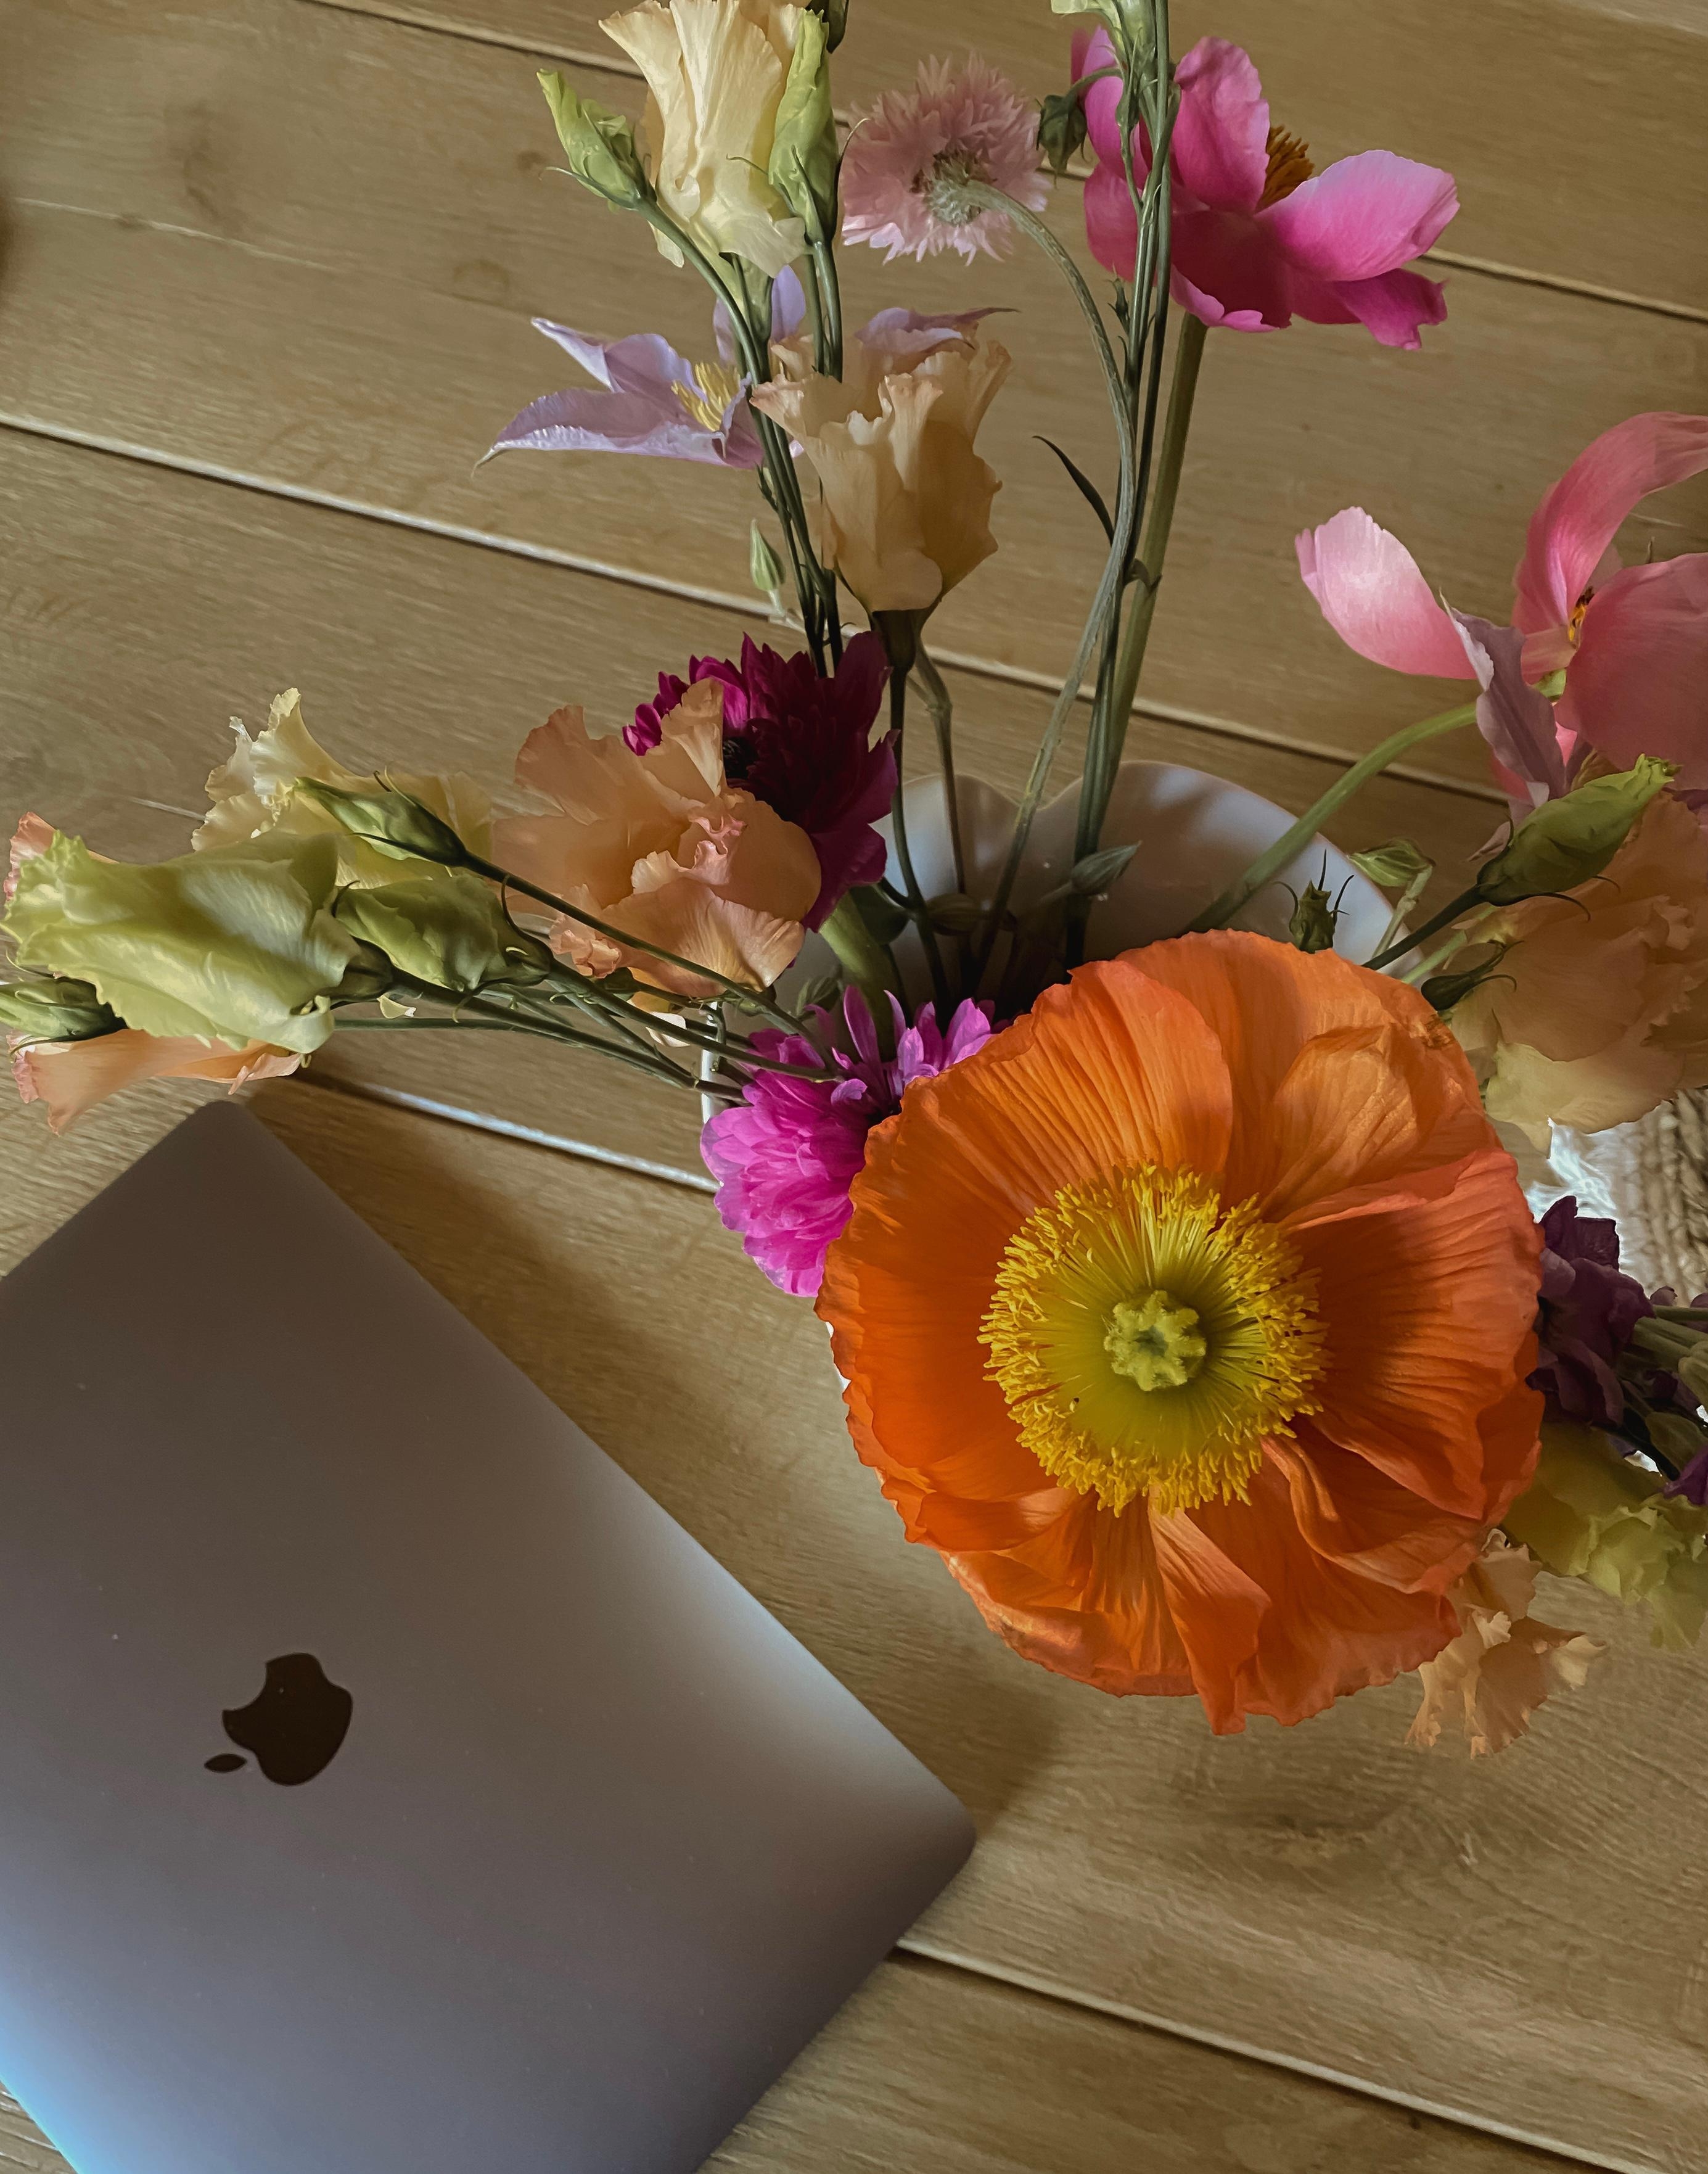 Flower Power 🌸

#work #flowers #wildflower #workspace #aesthetics #interior #details #apple